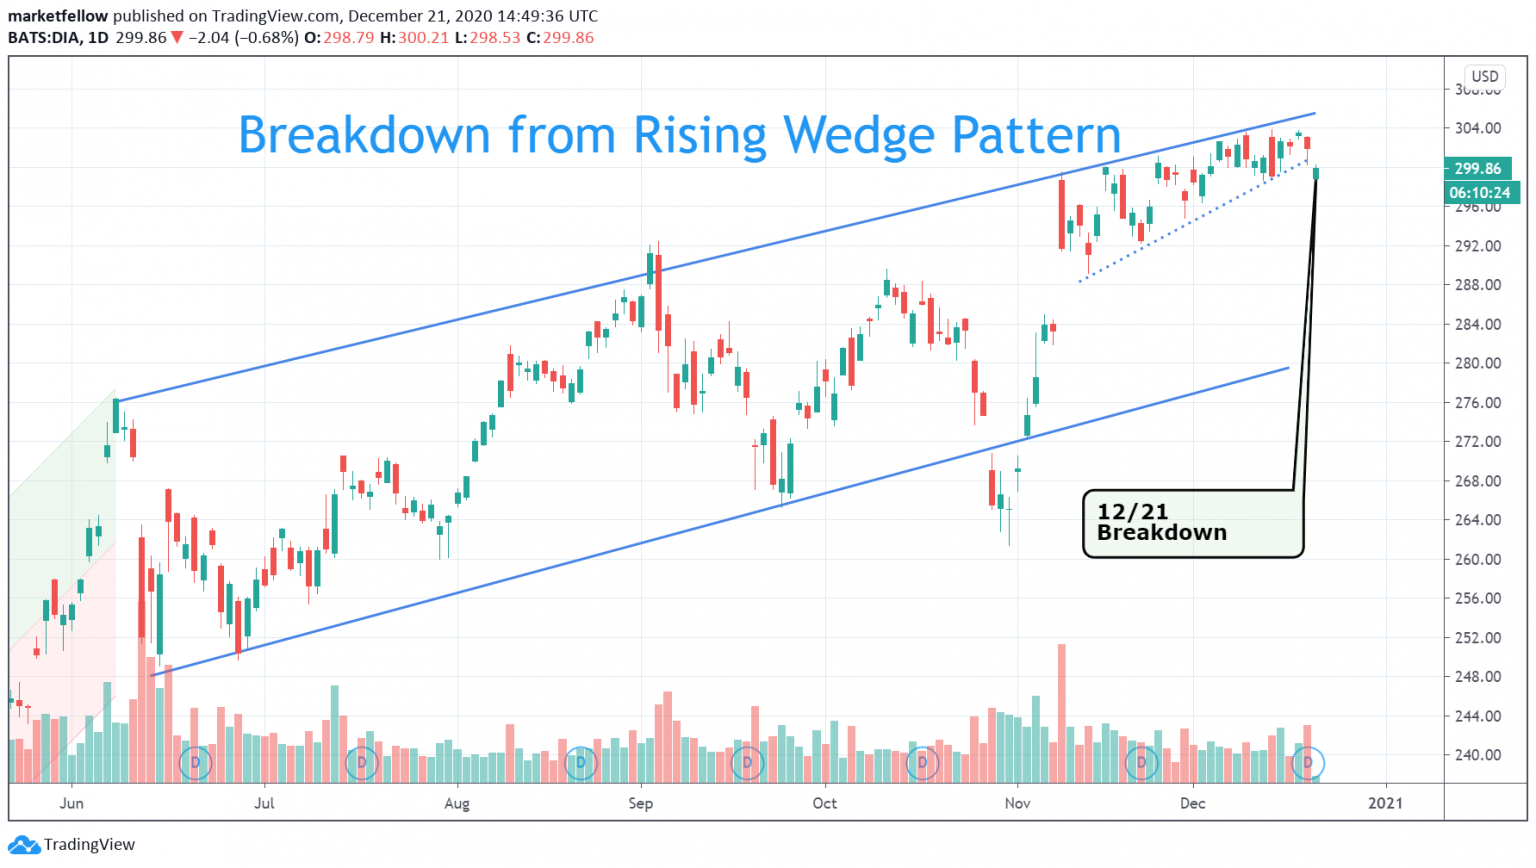 ascending wedge stocks